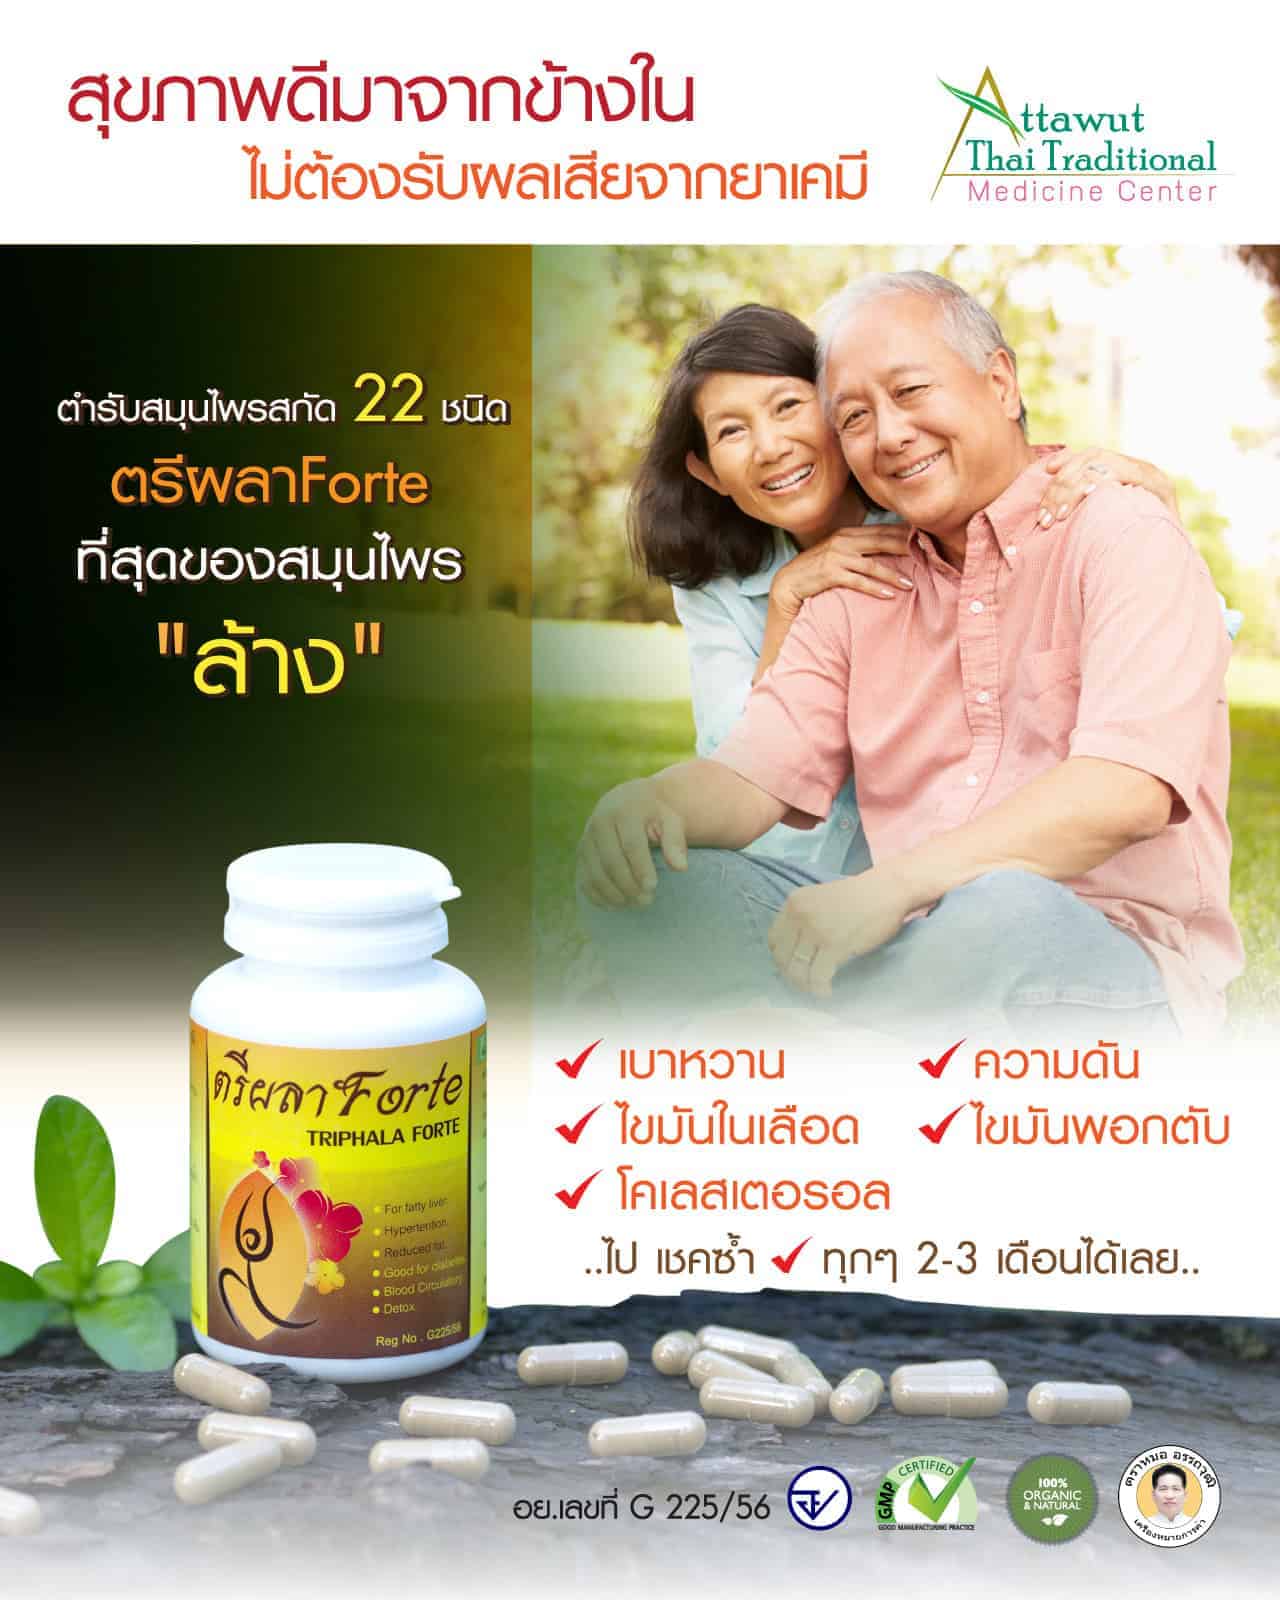 ประชาสัมพันธ์ขาย ยา สมุนไพร ความดันสูง อาการอื่นๆ และต้นเหตุที่เกิดจาก  ความดันสูง ตรีผลาForte หมออรรถวุฒิ Set 10 ขวด | คลินิคการแพทย์แผนไทย  หมออรรถวุฒิ Moh Attawut Brand